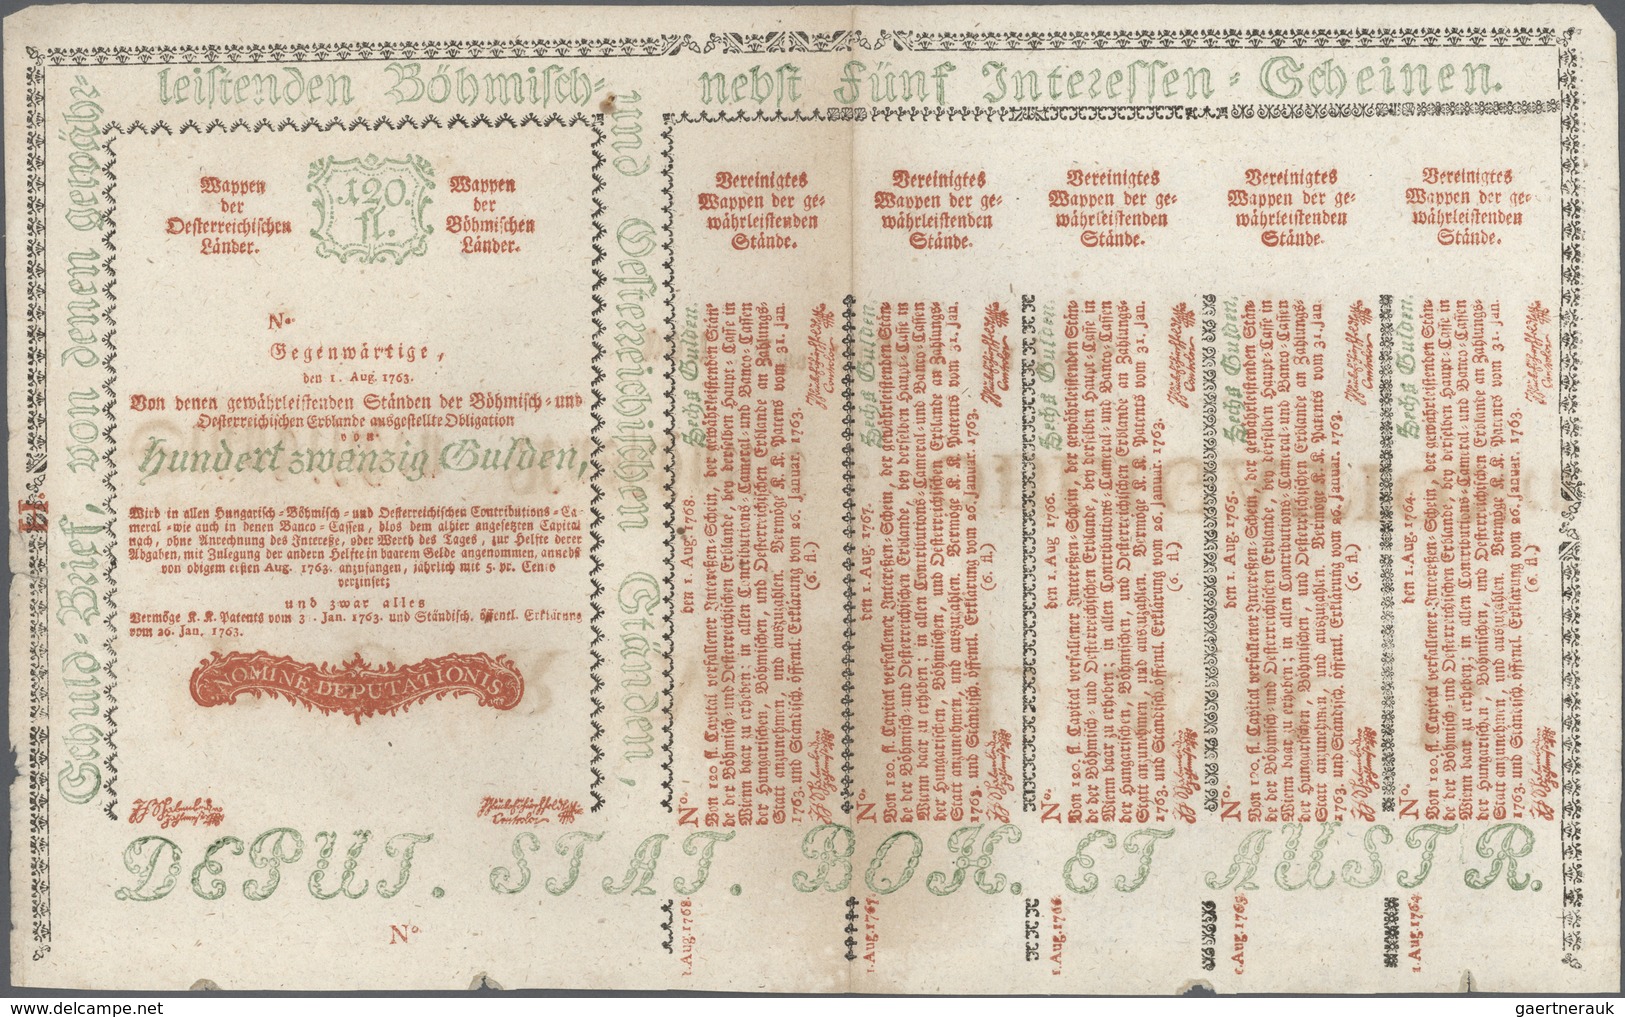 01068 Austria / Österreich: 120 Gulden 1763 Obligation Vienna, PR W13), Complete Sheet In Condition: XF. - Austria